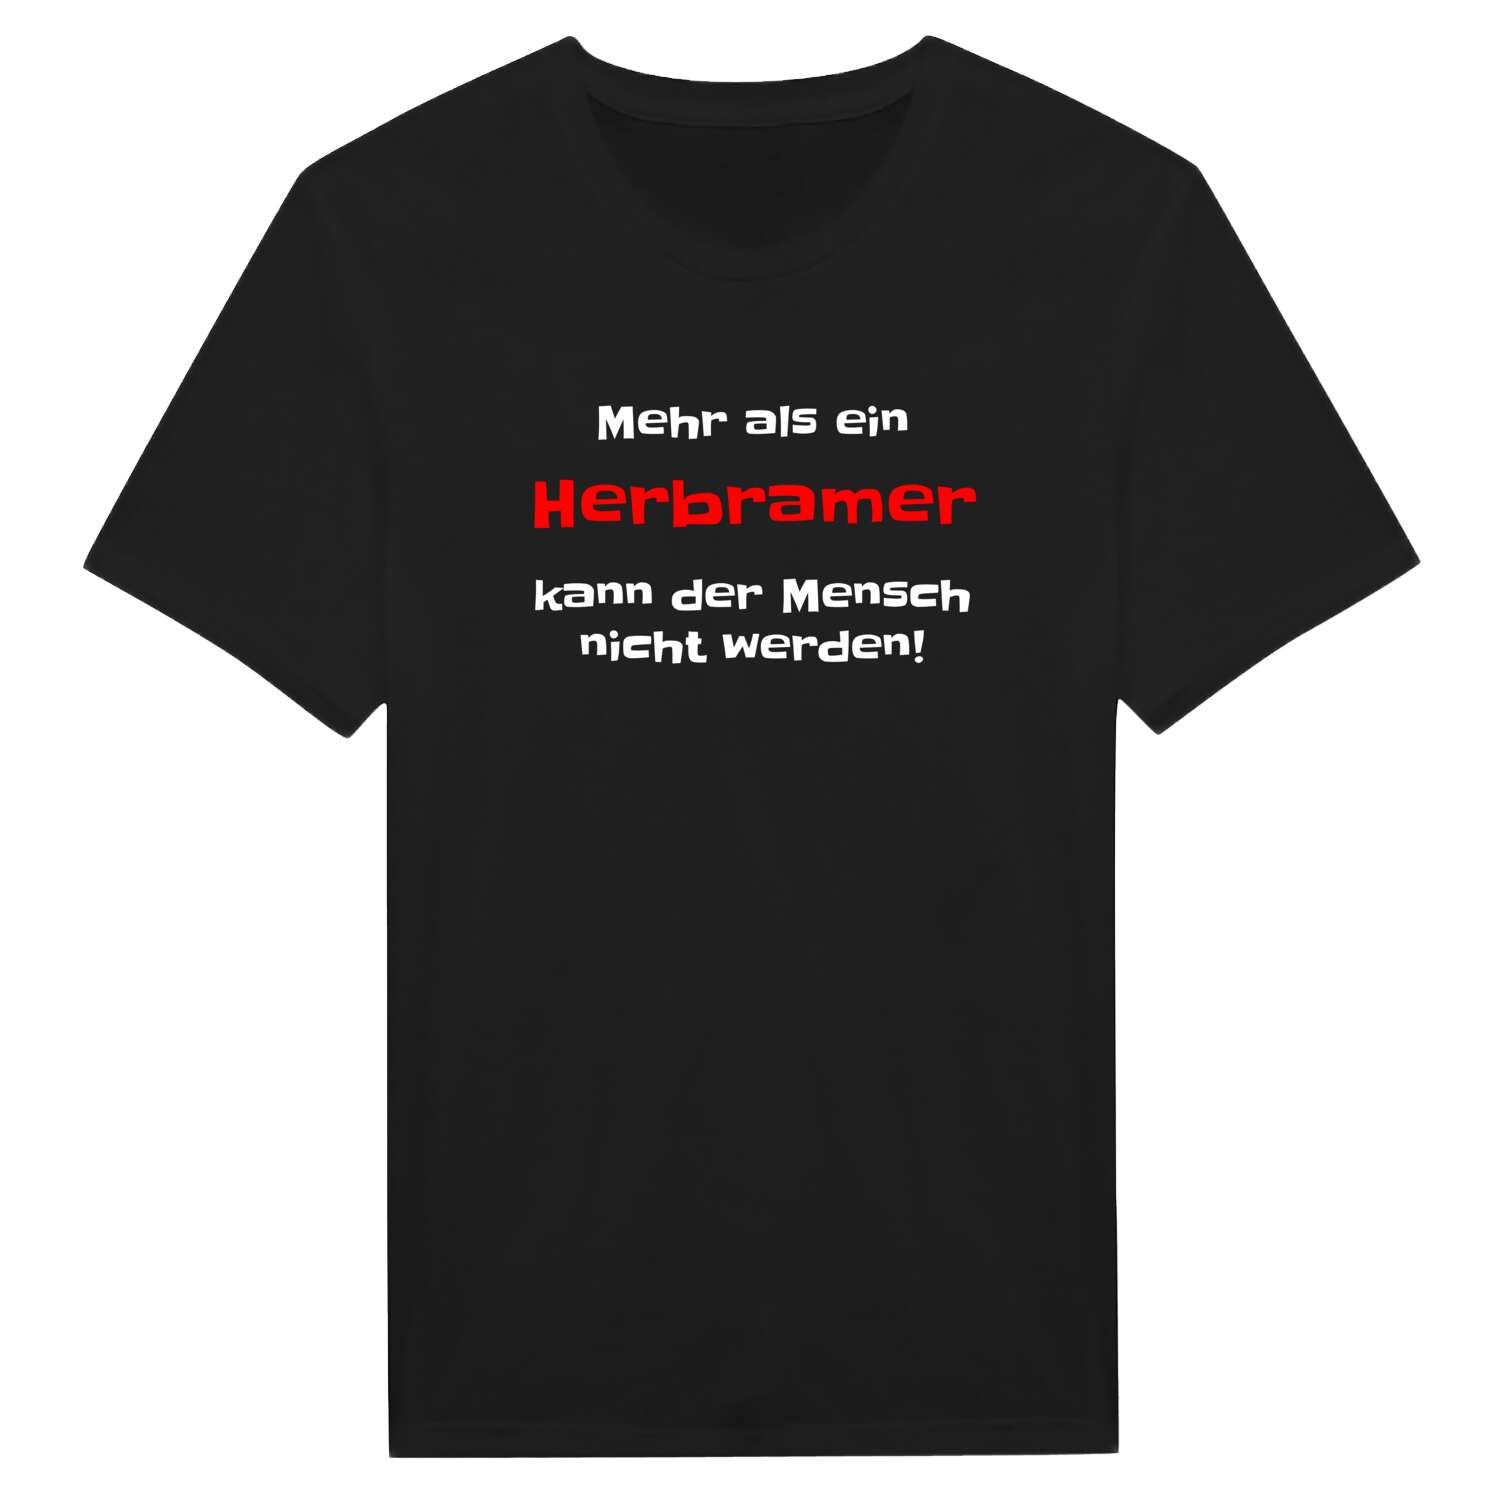 Herbram T-Shirt »Mehr als ein«